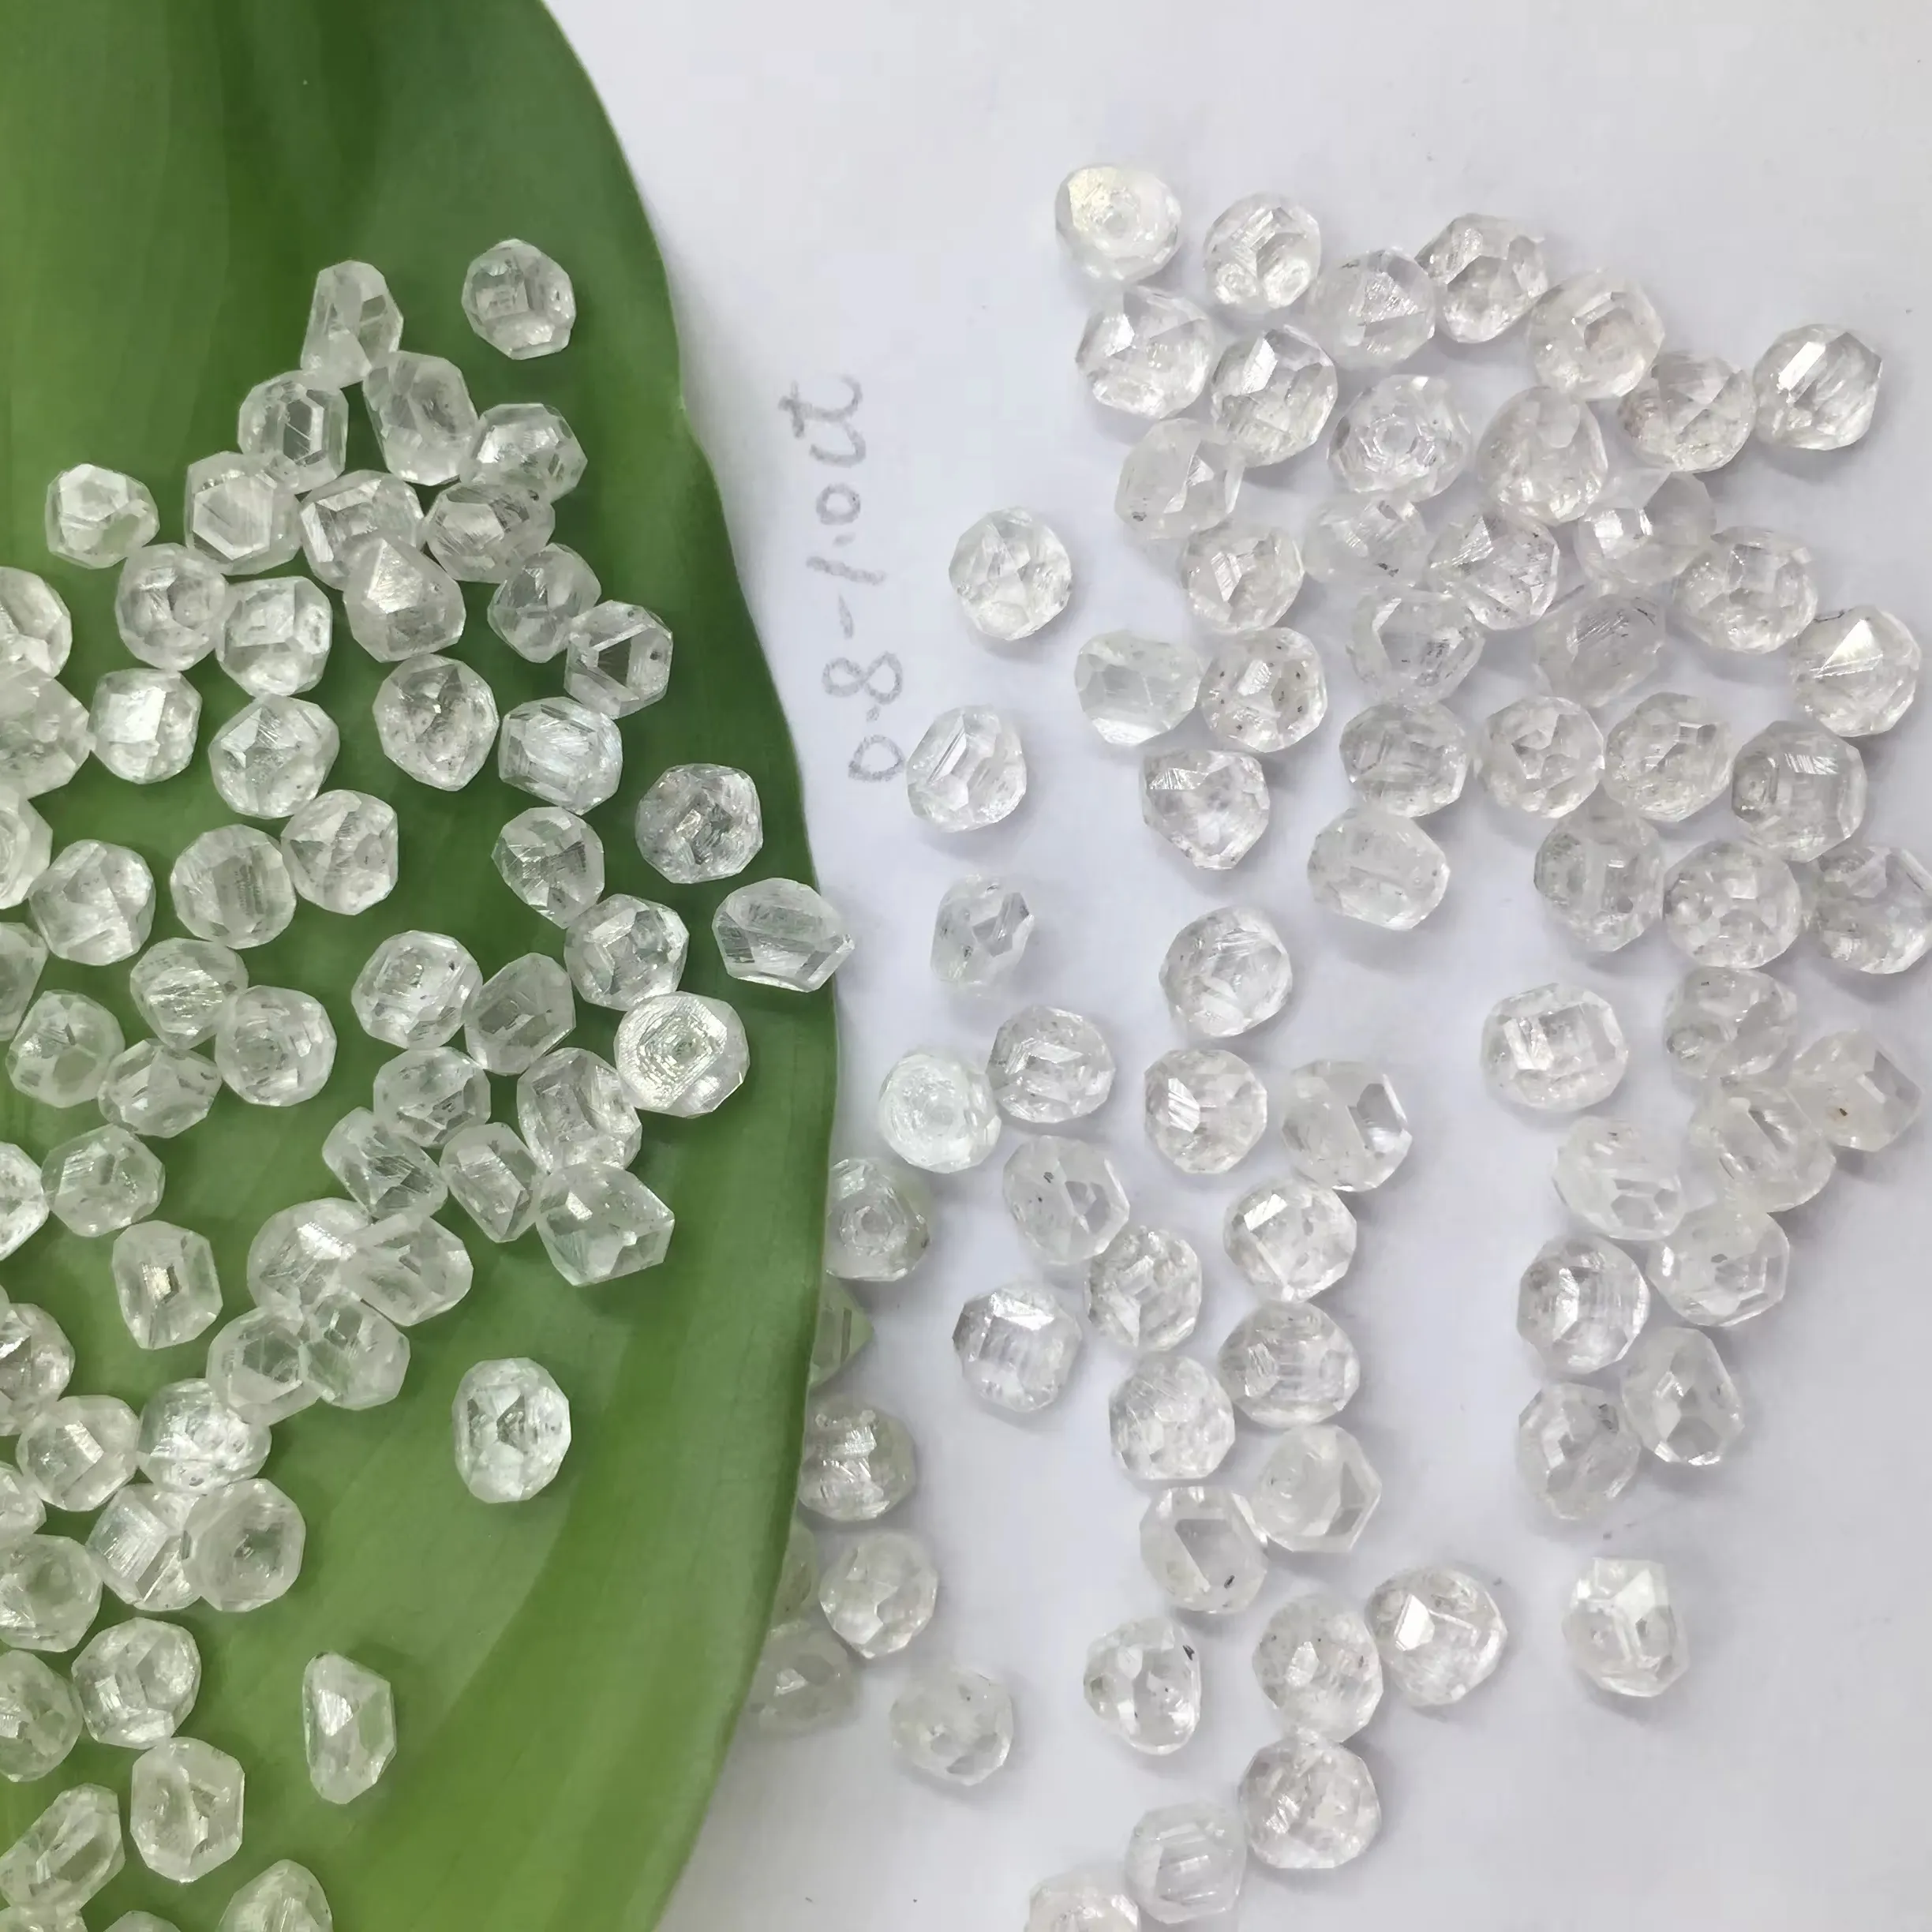 Diamants bruts bijoux en diamant naturel cultivé en laboratoire blanc cvd diamant brut vvs vs DEF pour bijoux à bas prix